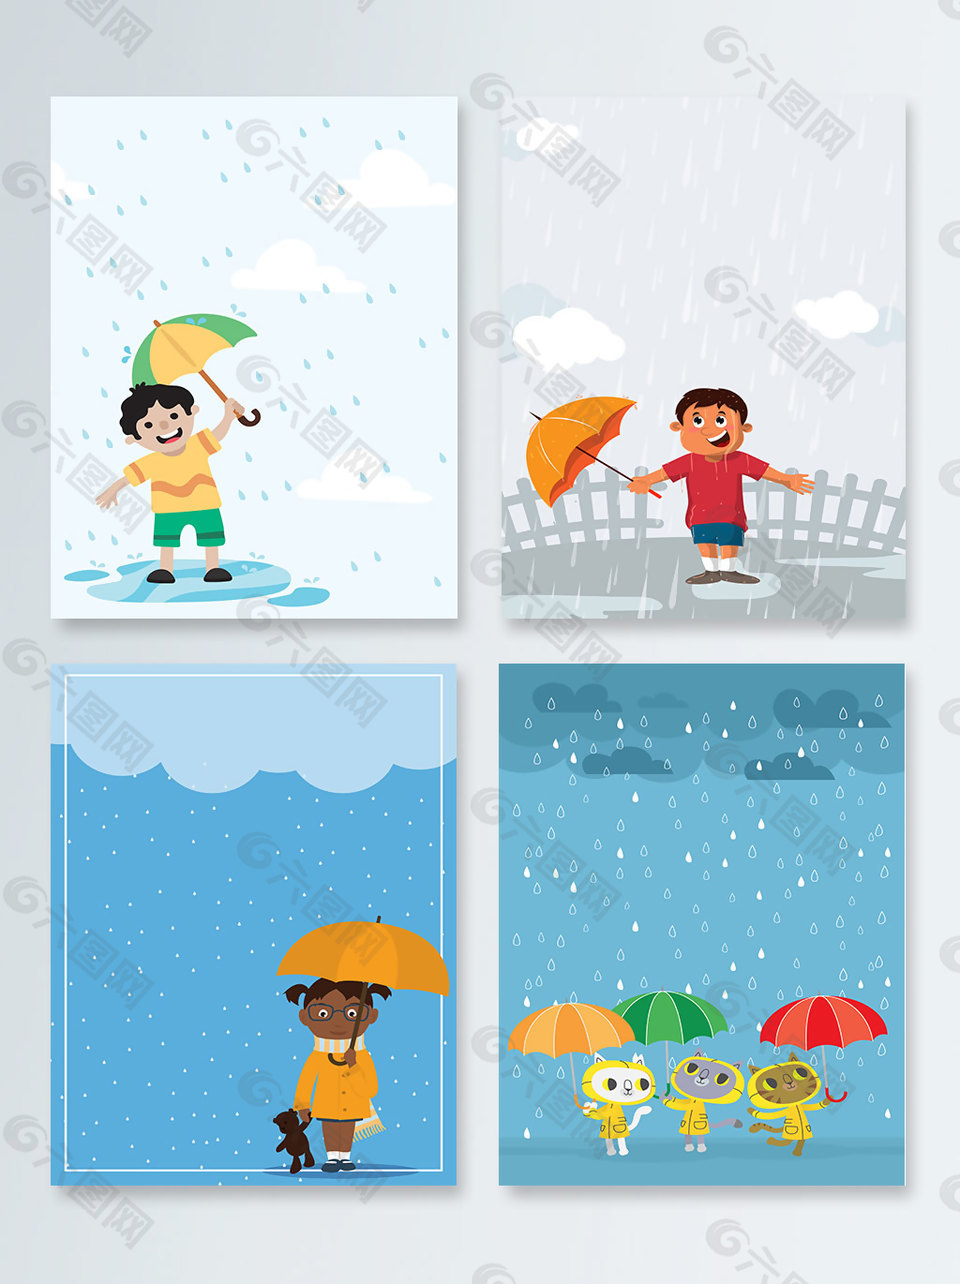 雨水儿童插画风格PSD分层格式